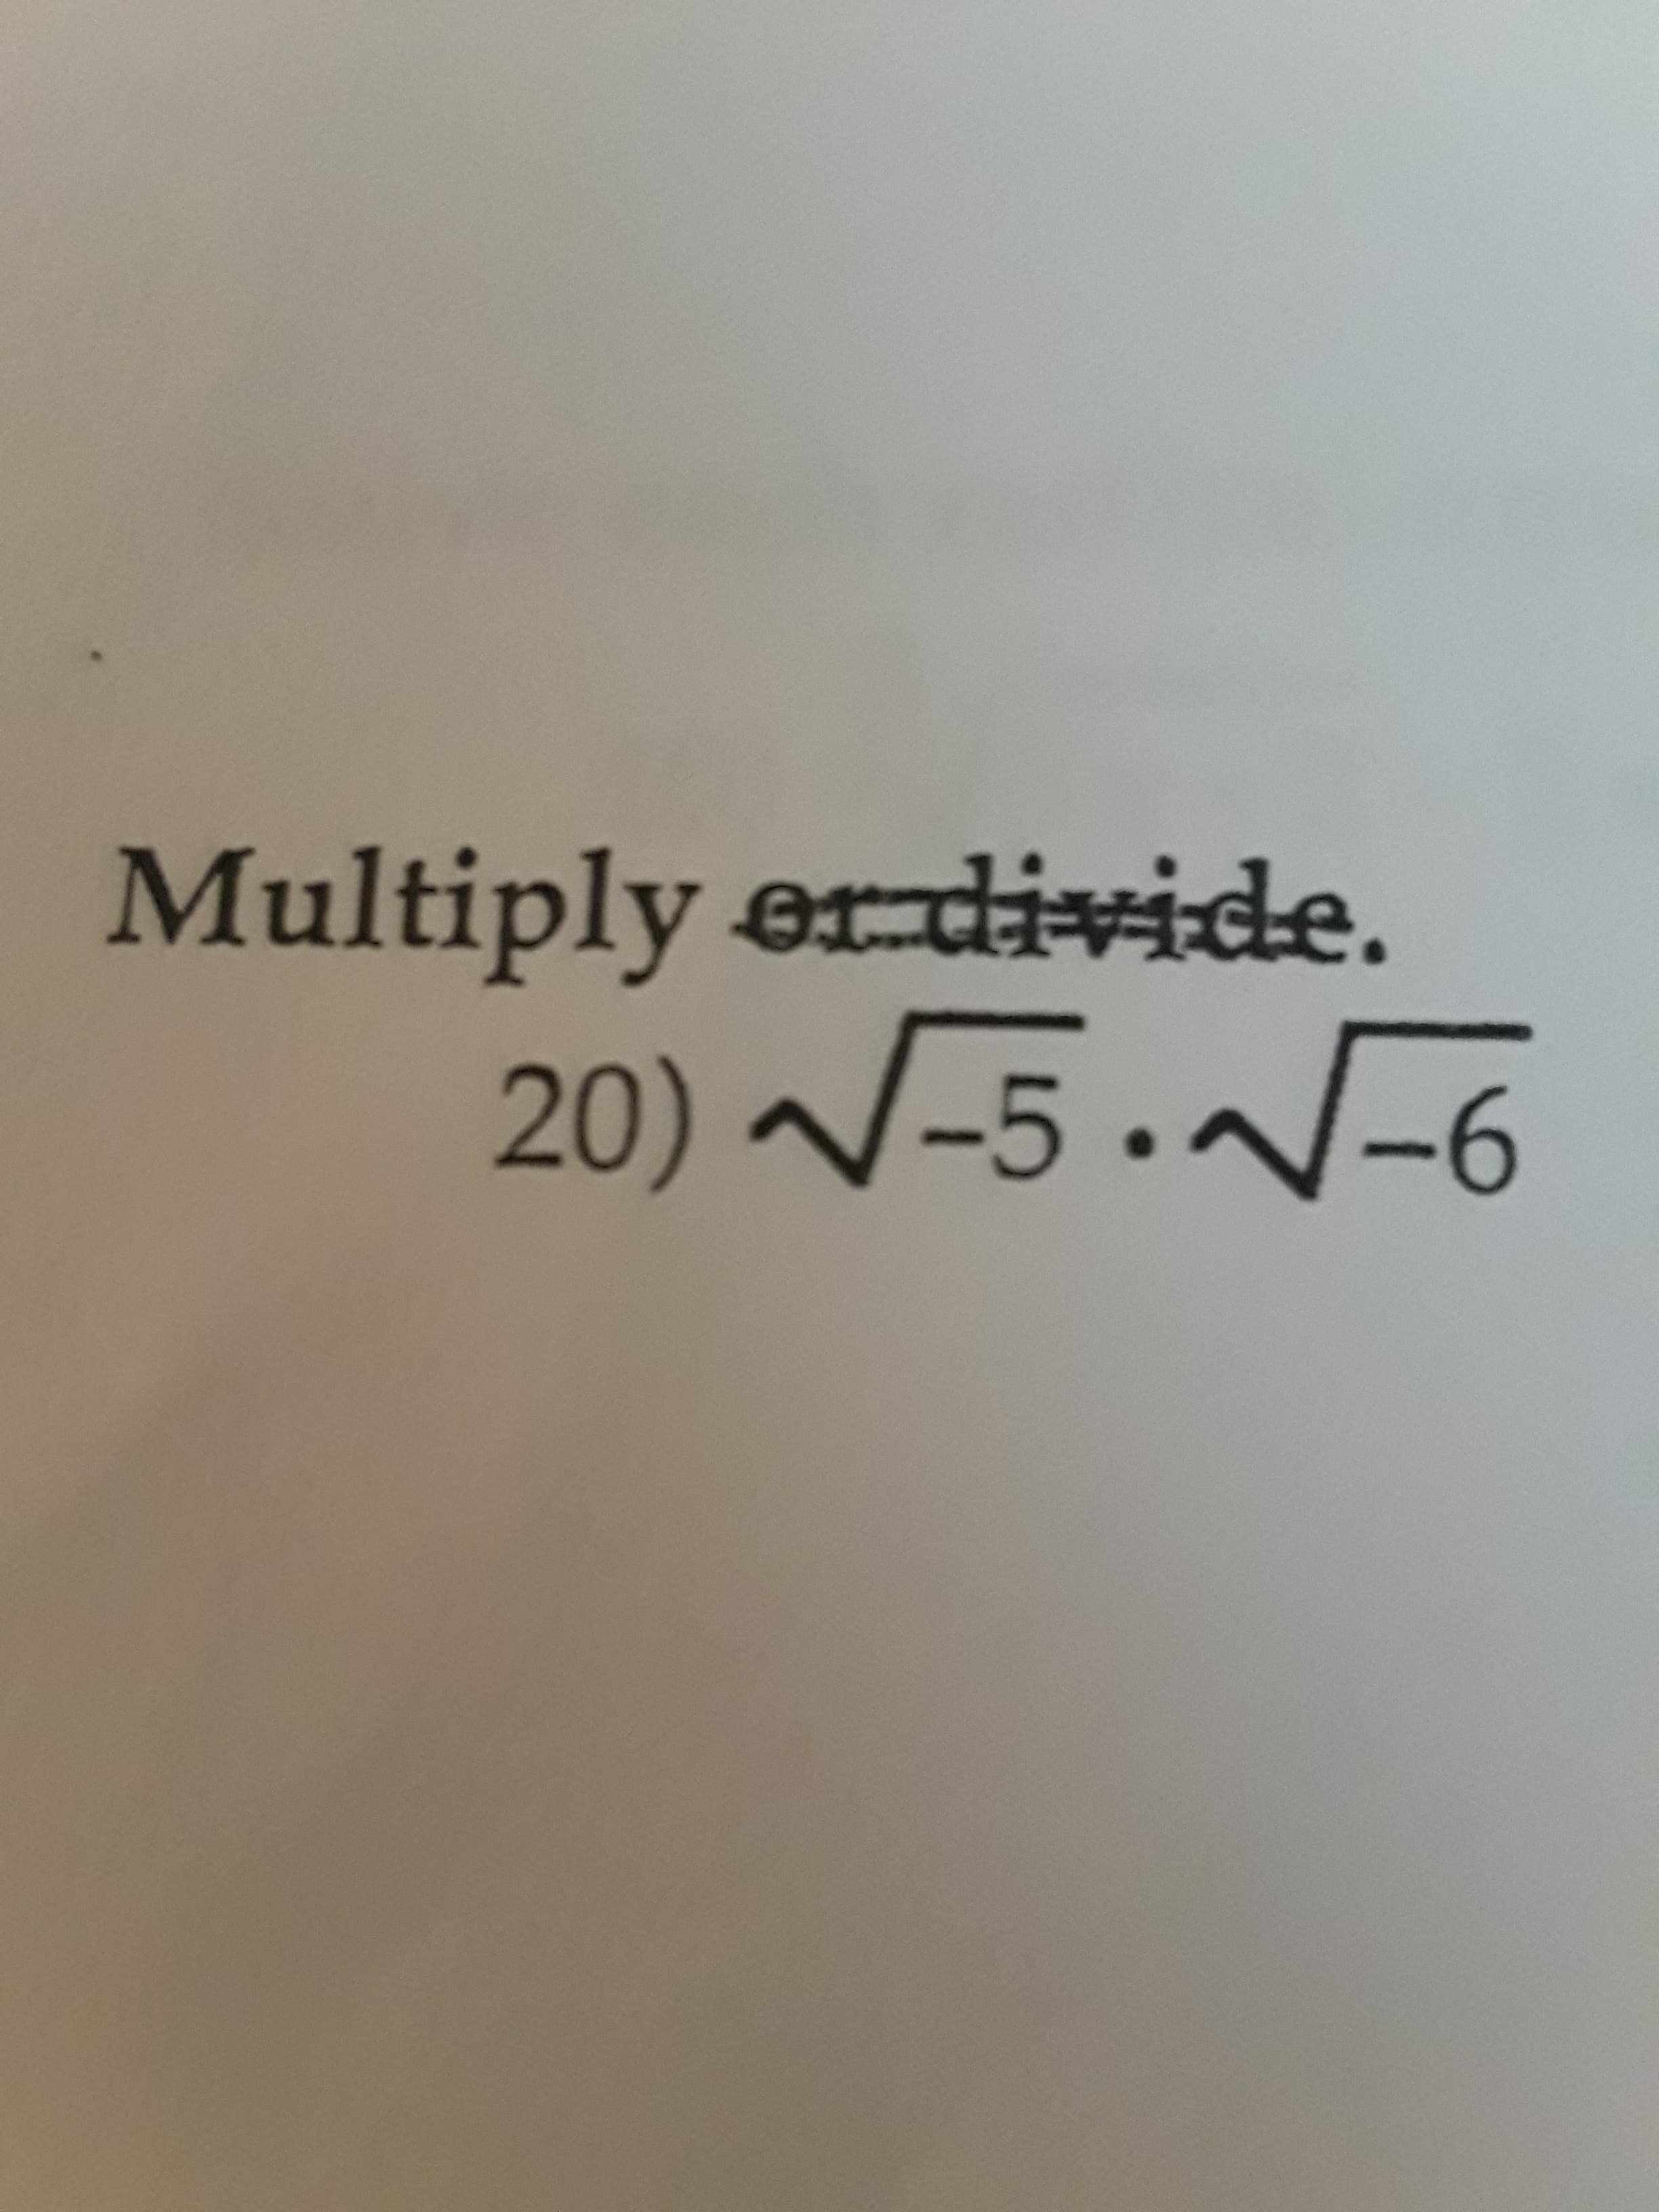 Multiply er divide.
20) -5.-6
